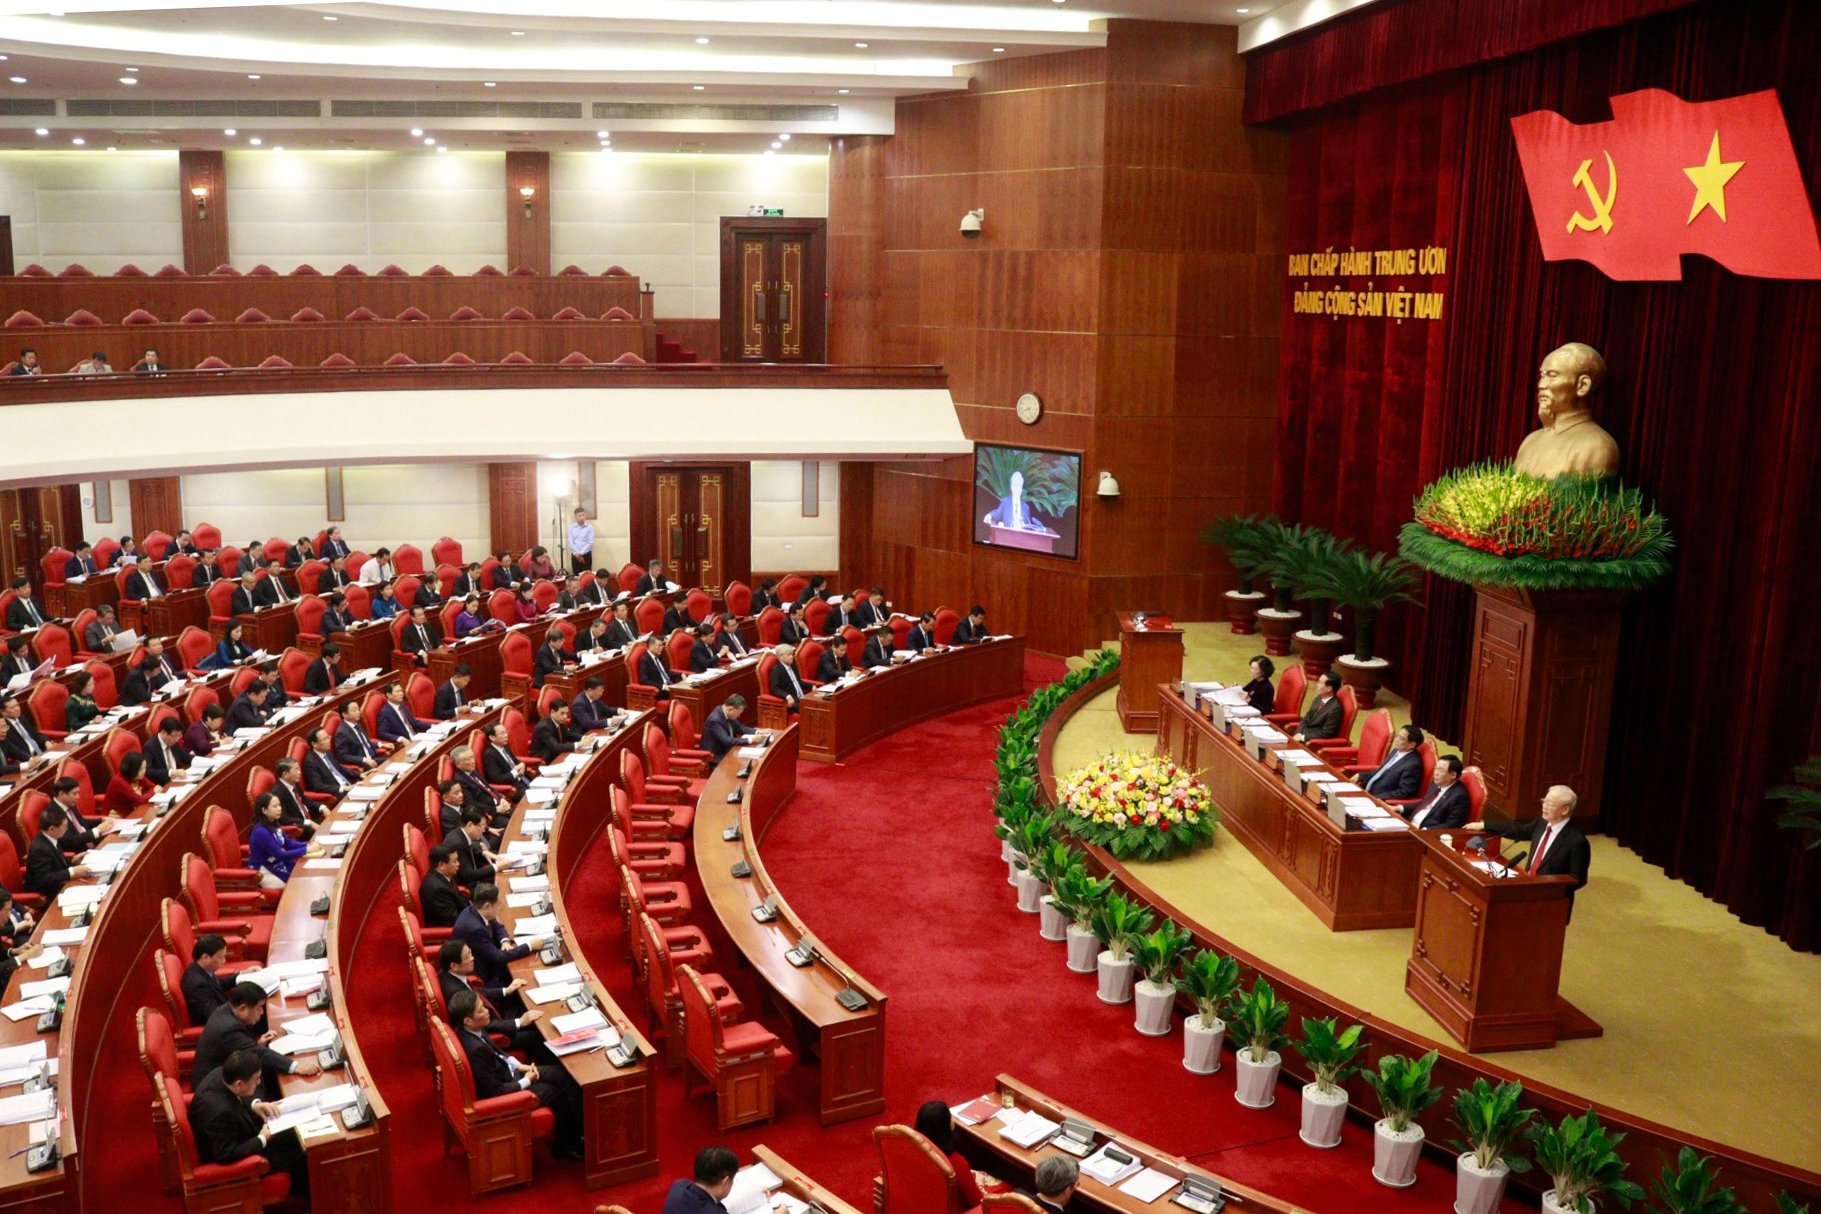 Hội nghị lần thứ 8 Ban Chấp hành Trung ương Đảng khóa XIII khai mạc sáng 2/10 tại Hà Nội.